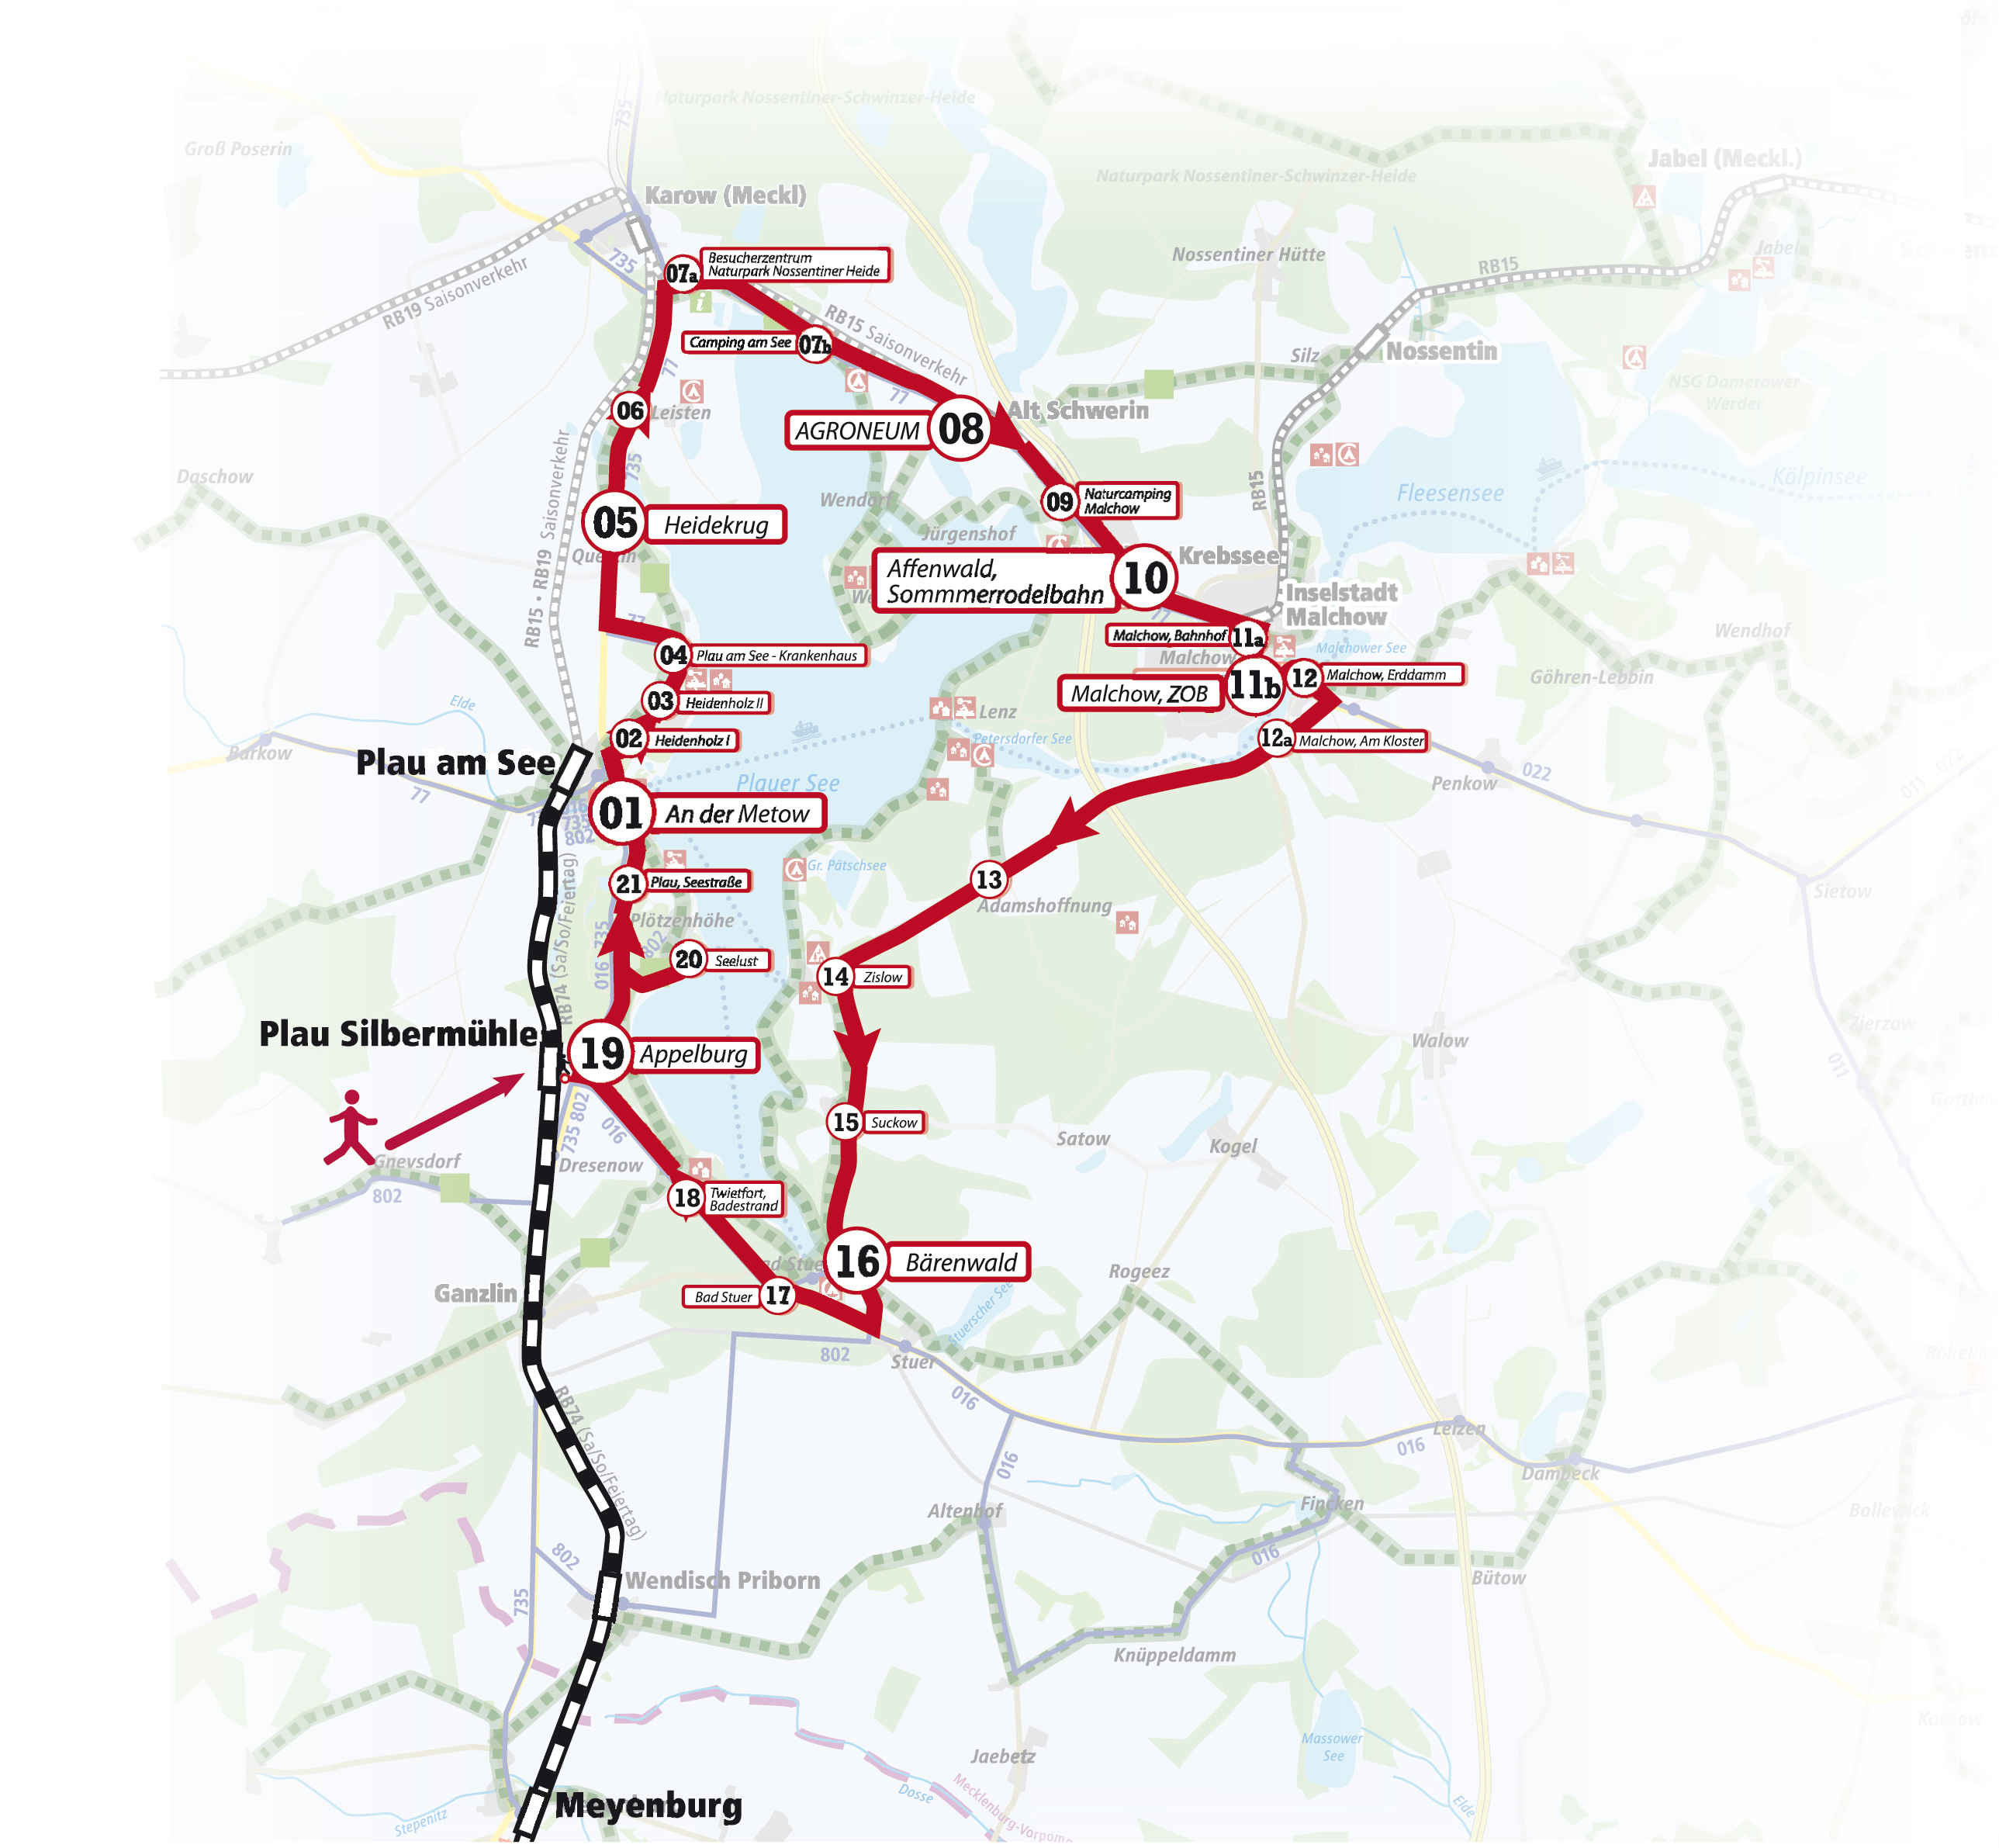 schematische Linienübersicht der Bahn- und Buslinien am Plauer See 2021